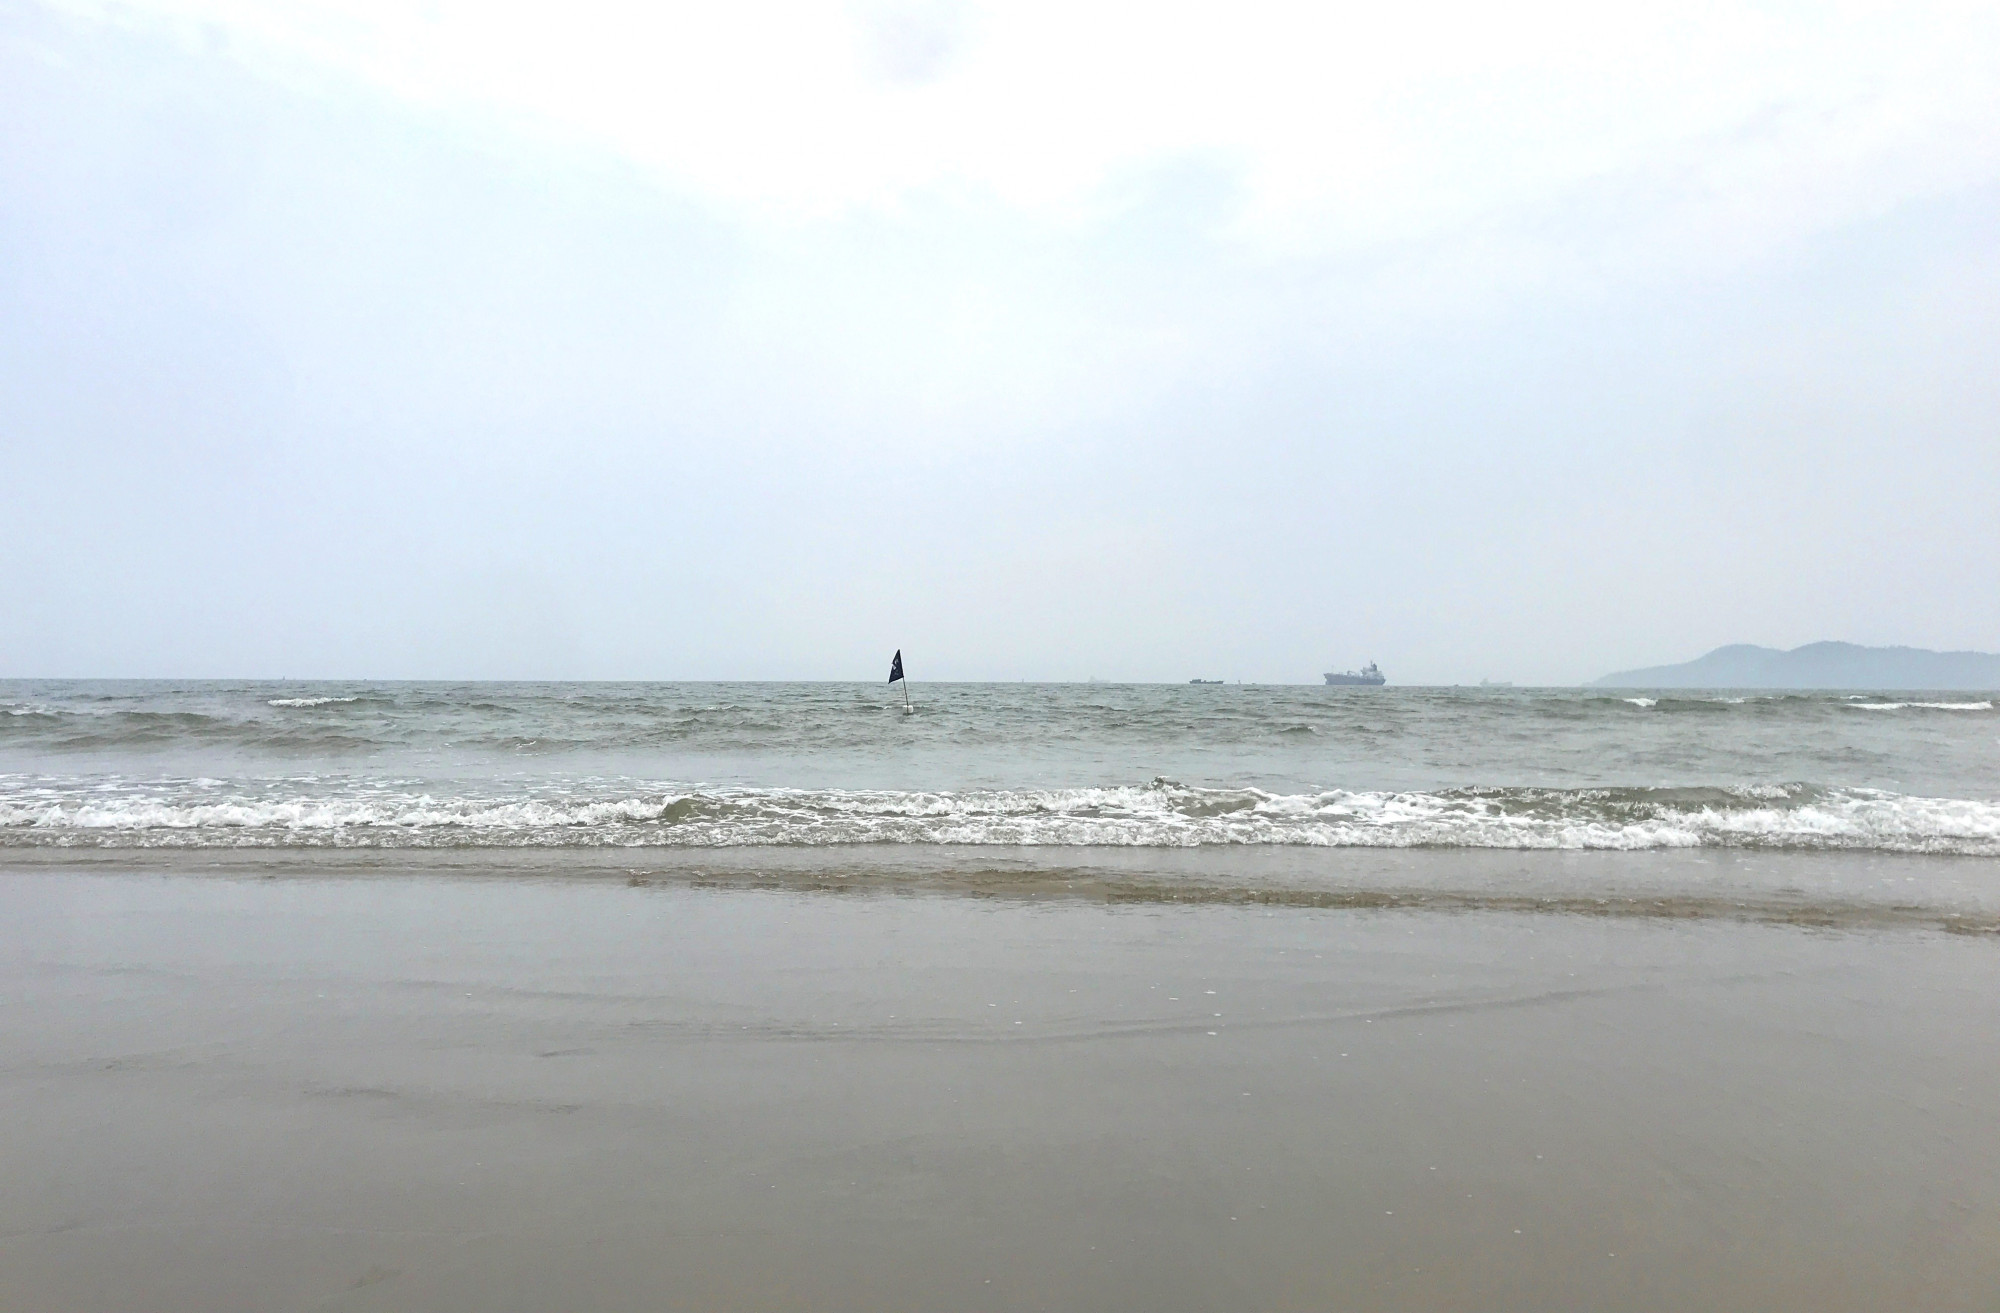 Bãi biển Cửa Lò, nơi nhóm du khách gặp nạn - Ảnh: Phan Ngọc